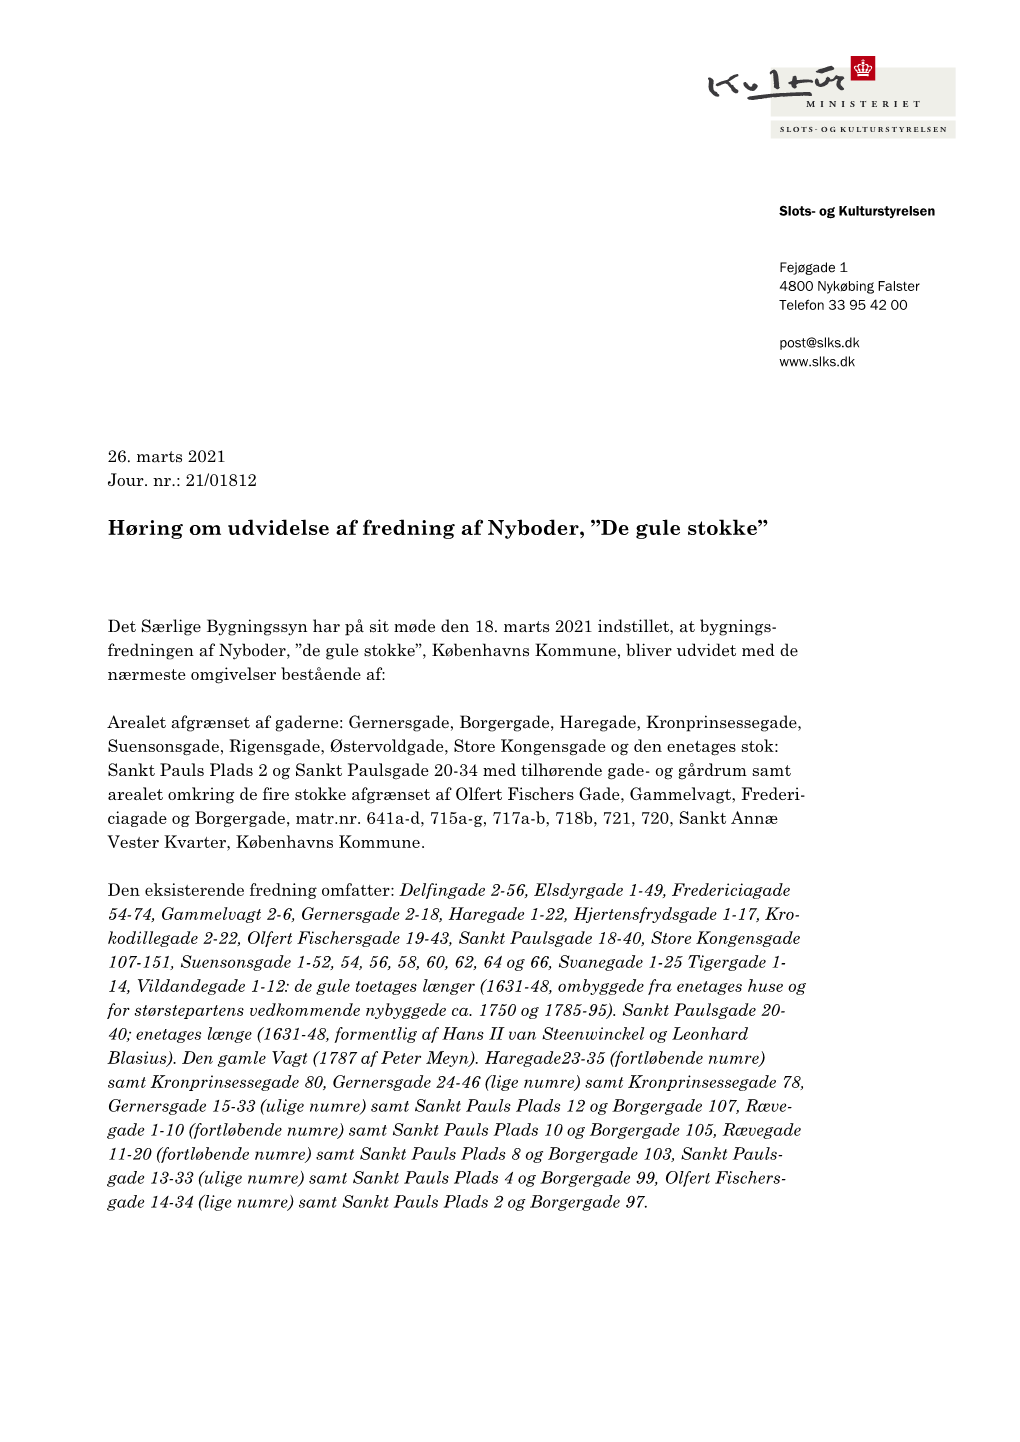 Høringsbrev Om Fredningsudvidelse Af Nyboder